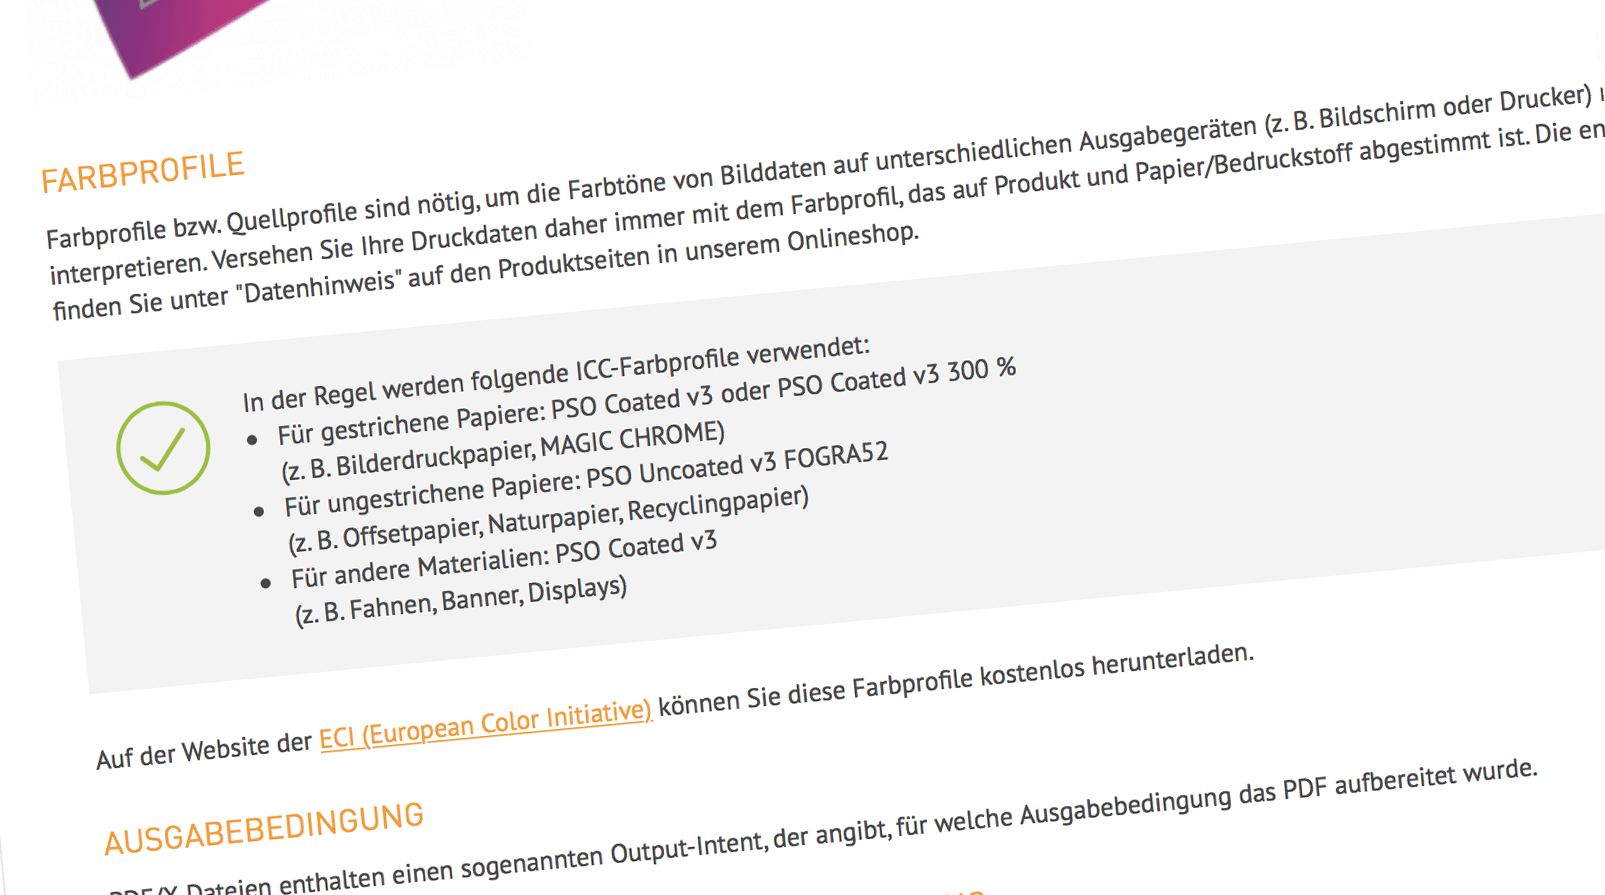 DieDruckerei.de ir pārgājis uz jaunajiem standartiem PSOCoatedV3 un PSOUncoatedV3